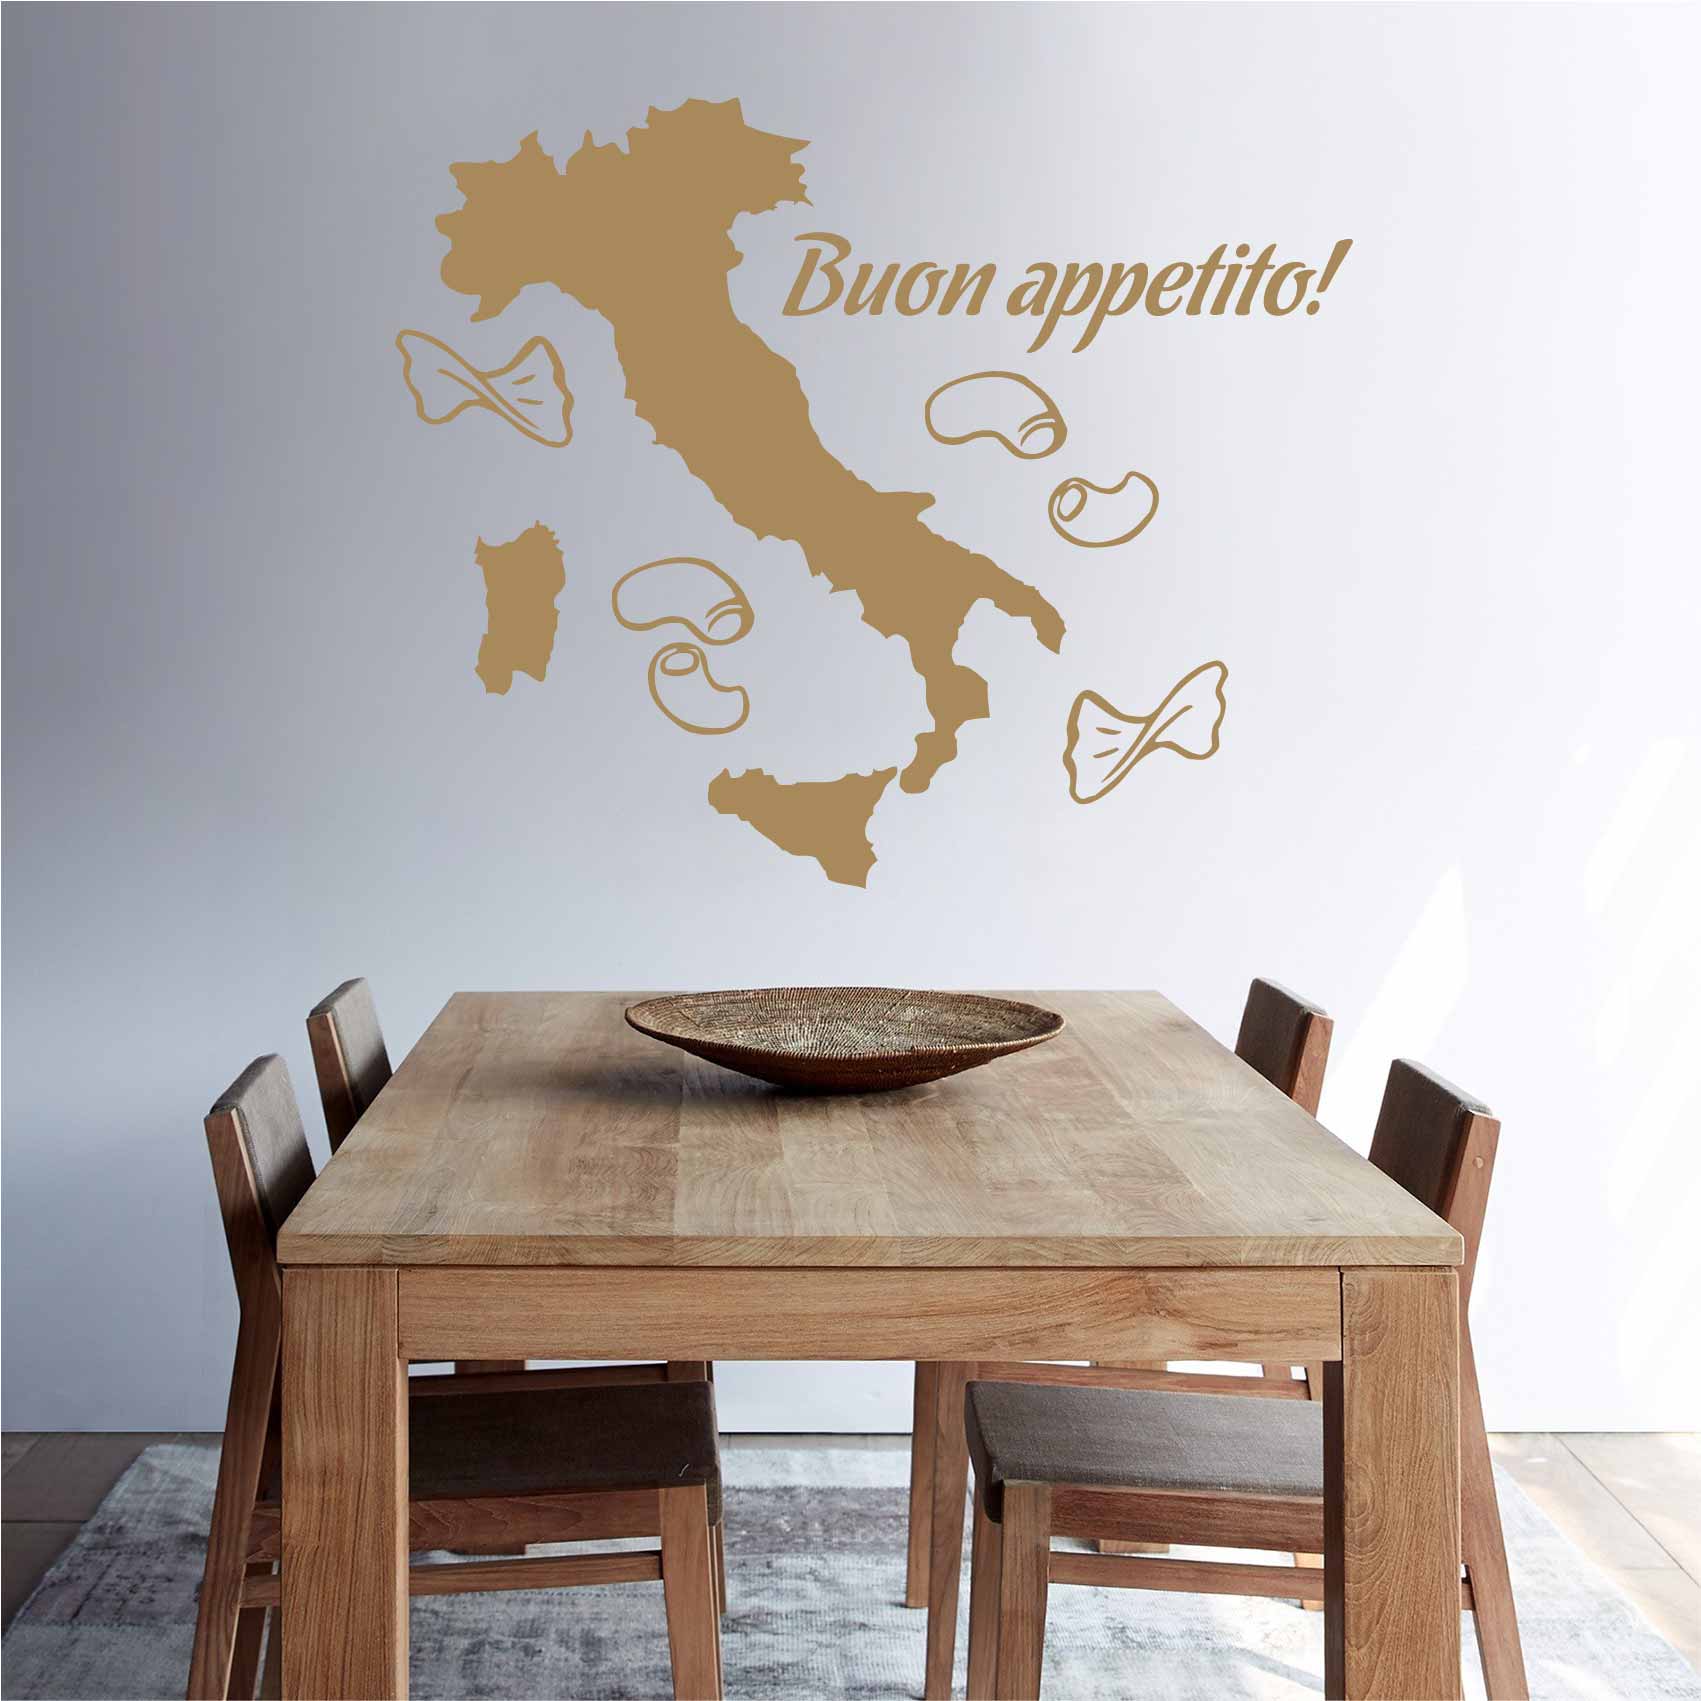 stickers-buon-appetito-italie-ref27cuisine-autocollant-muraux-cuisine-kitchen-sticker-mural-deco-decoration